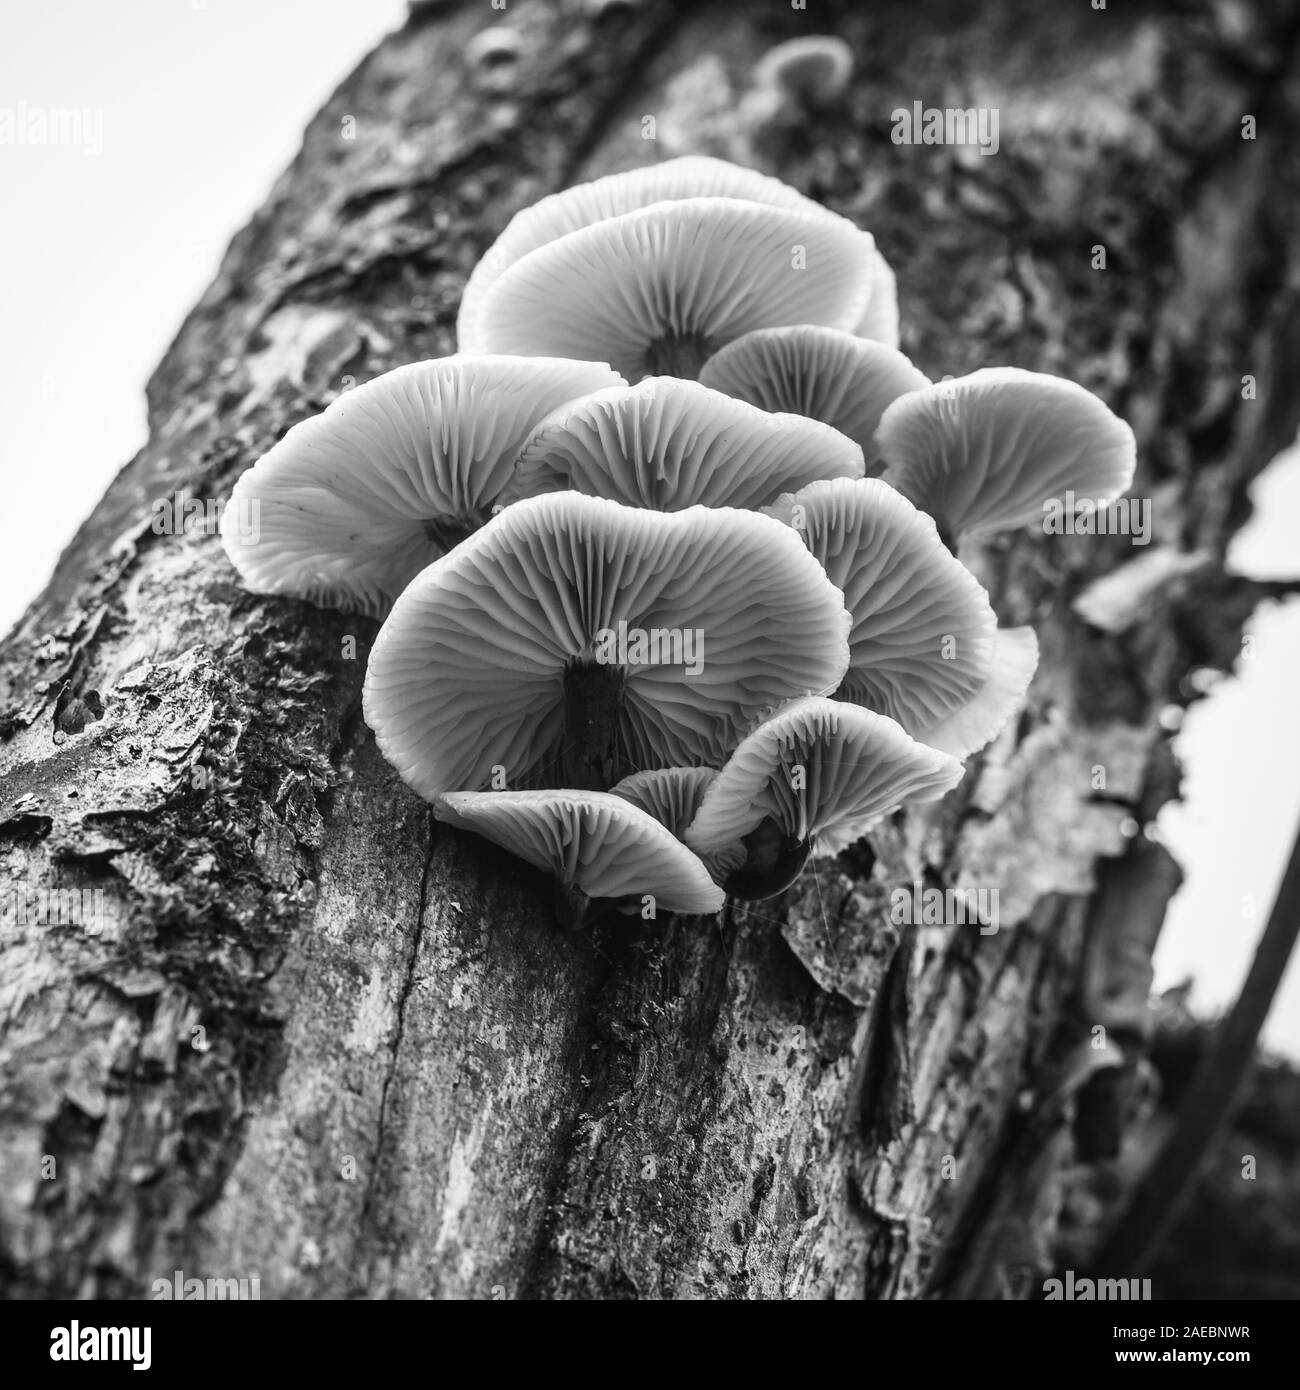 Les champignons poussent sur un arbre trump, close-up photo en noir et blanc avec selective focus Banque D'Images